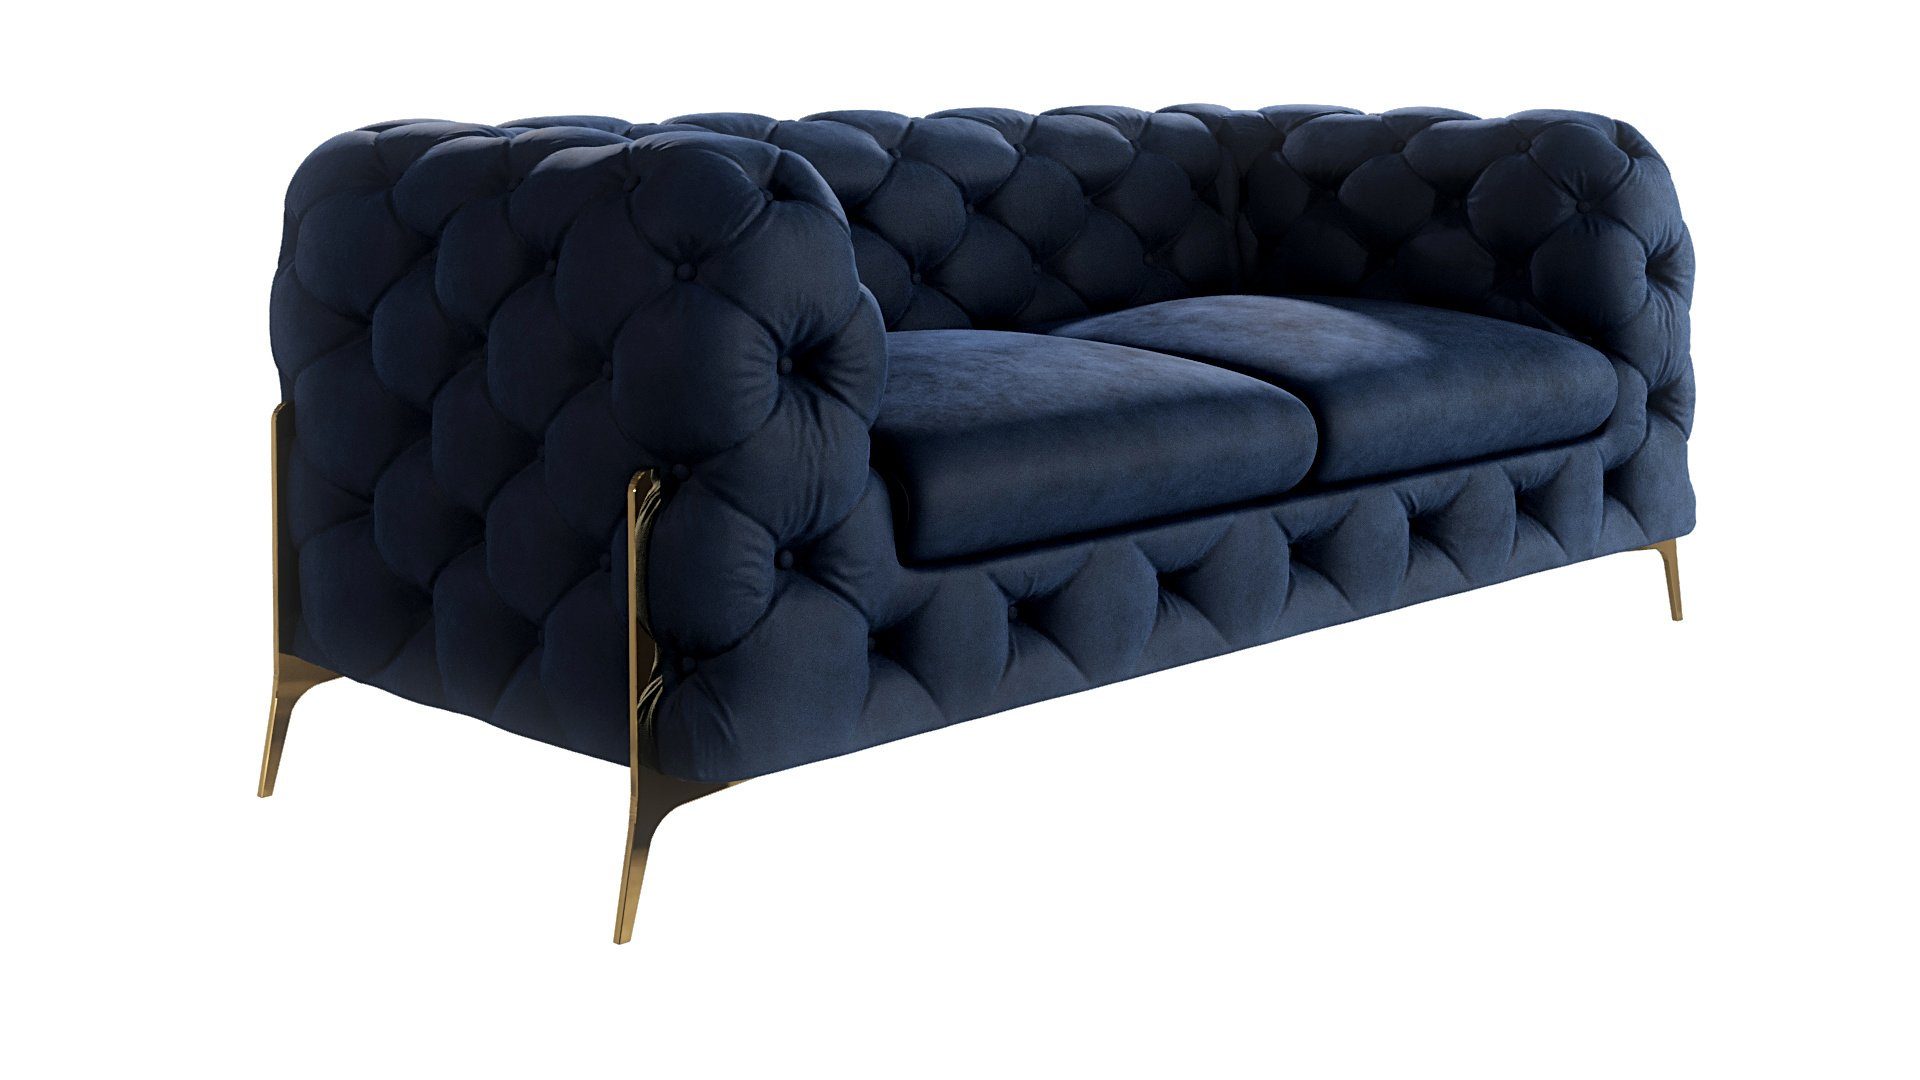 Füßen, S-Style Ashley mit Chesterfield Marineblau mit Goldene 2-Sitzer Sofa Metall Möbel Wellenfederung